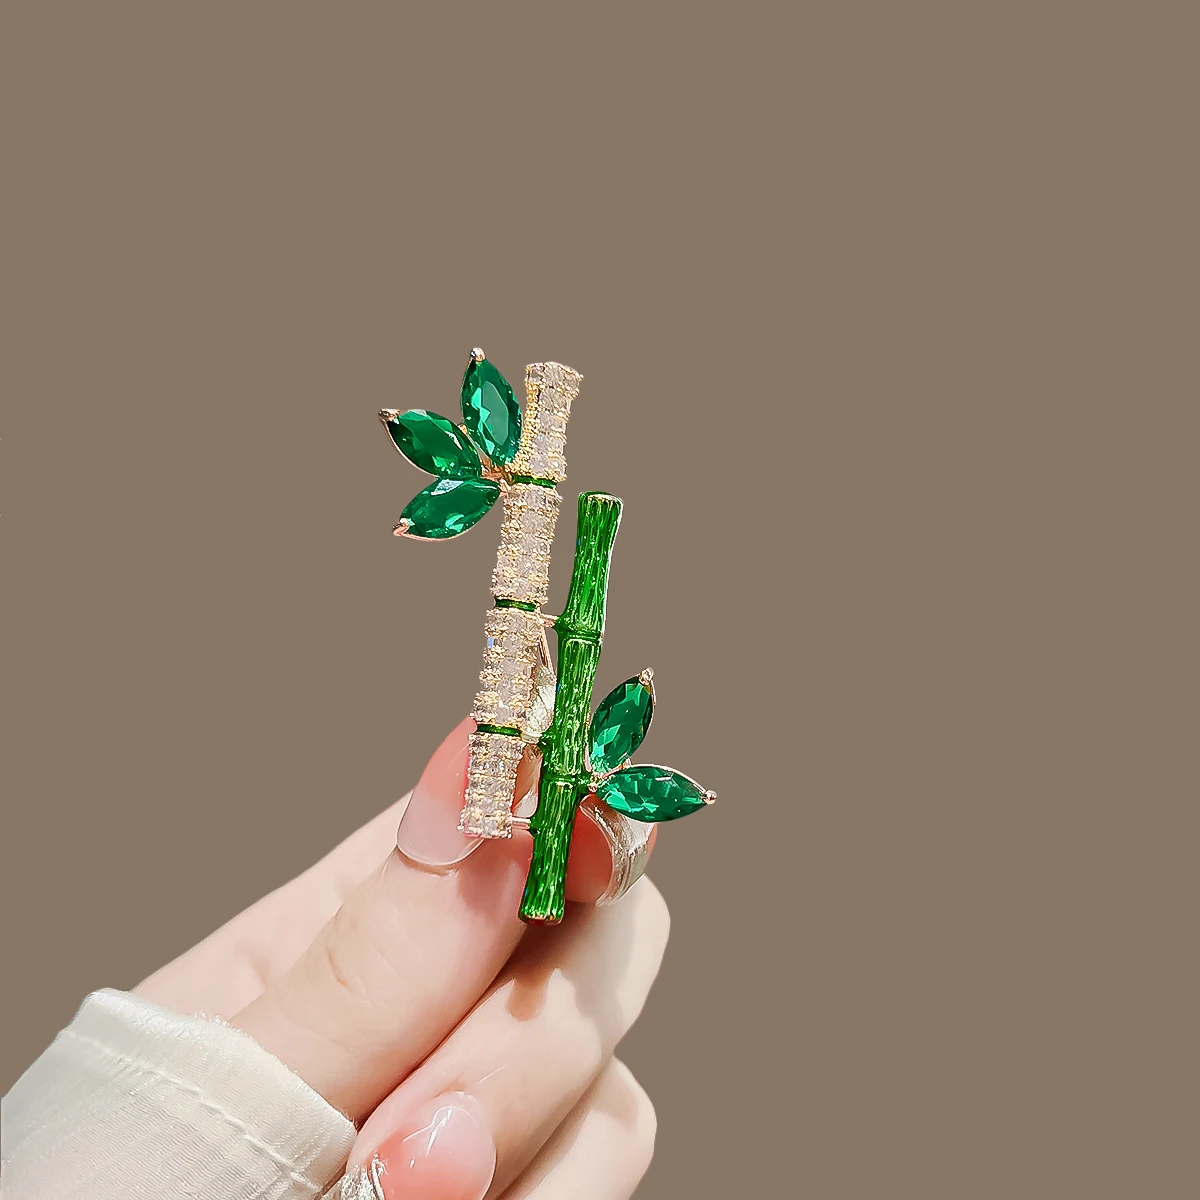 

Женская Брошь-булавка в стиле ретро, элегантная брошь в форме бамбука с искусственным Изумрудом и зеленым растением, аксессуар для костюма, воротника или платья